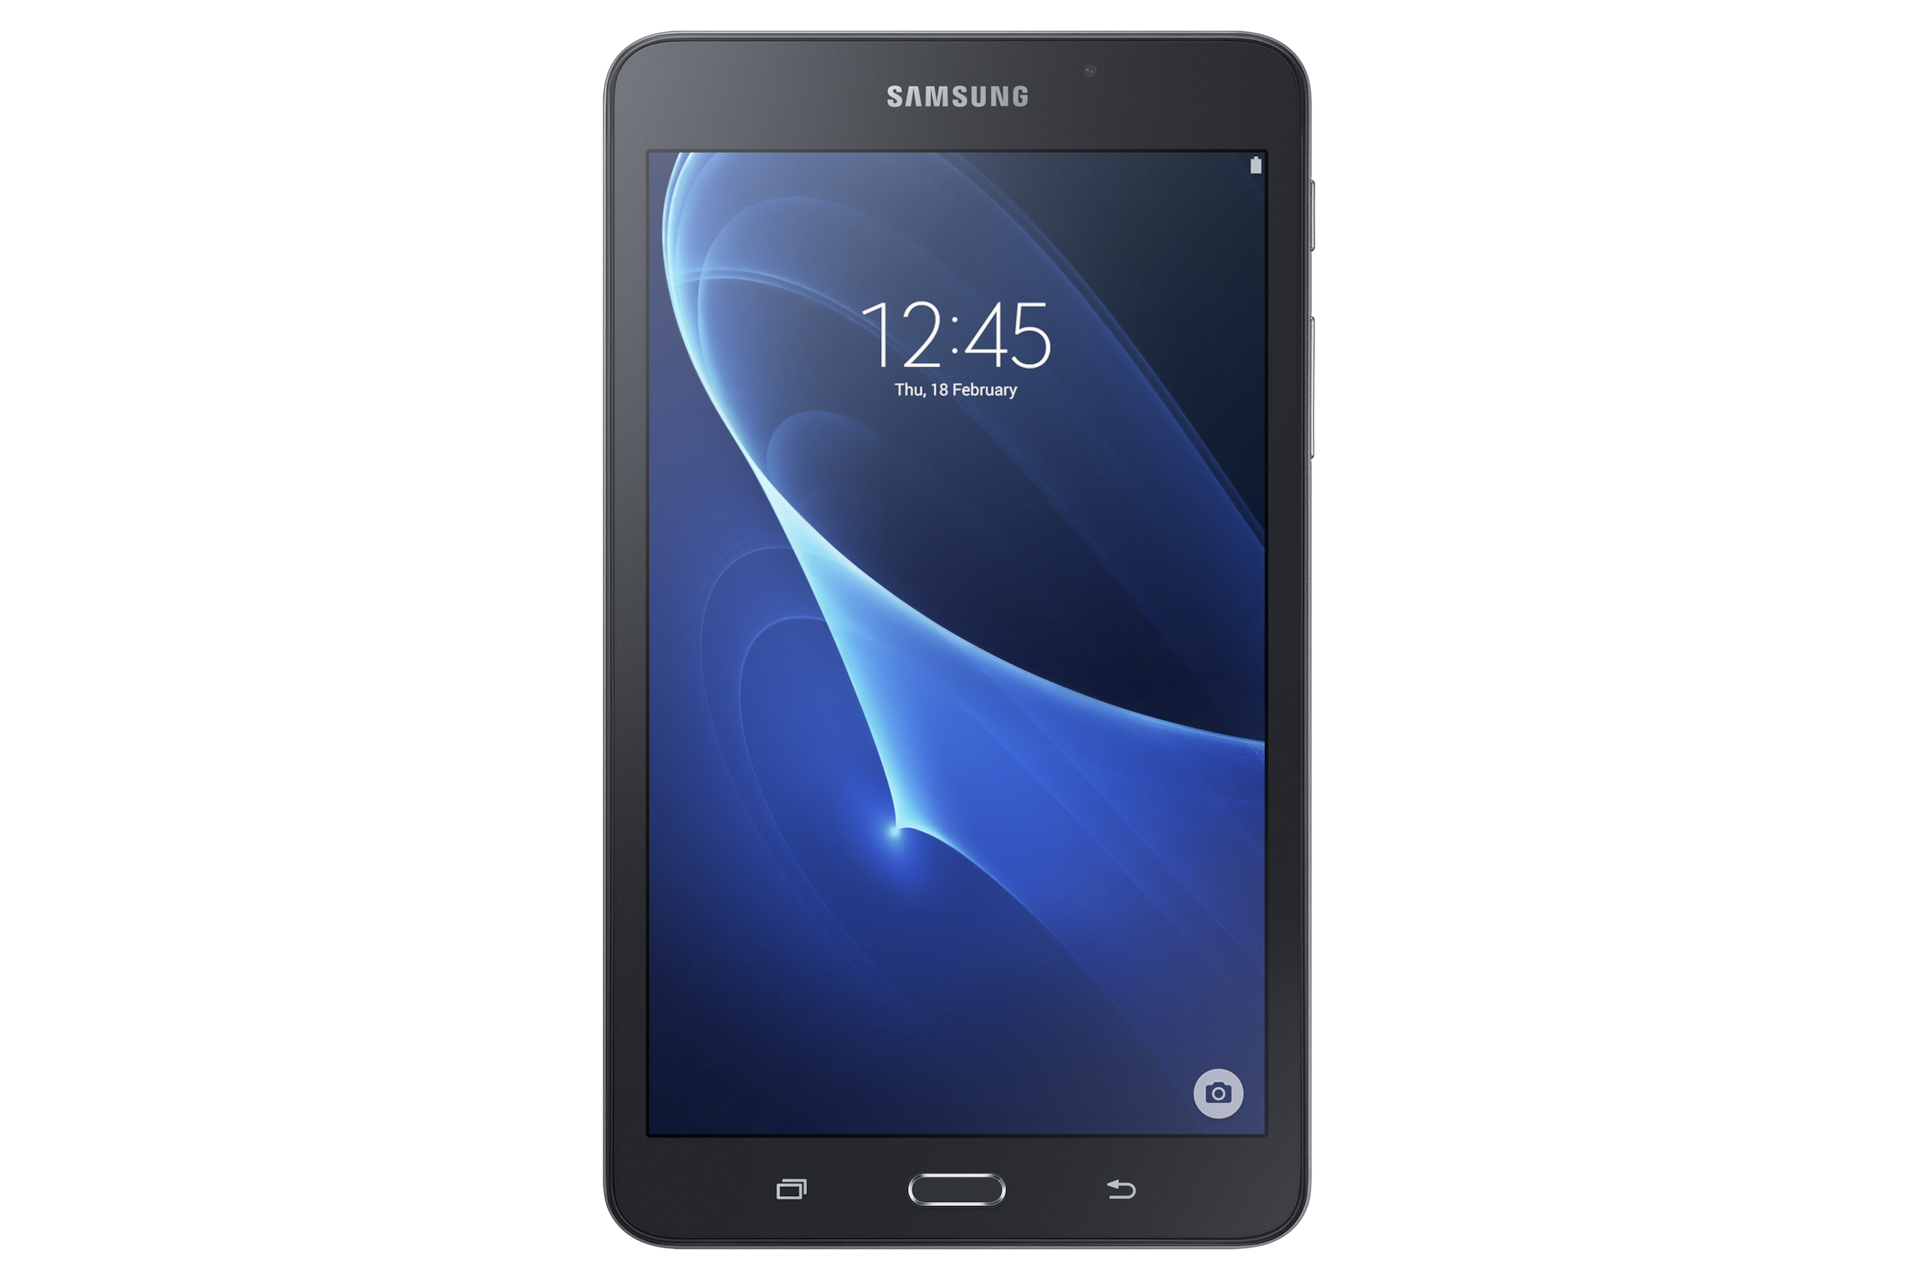 美品SAMSUNG Galaxy Tab A7.0 2016